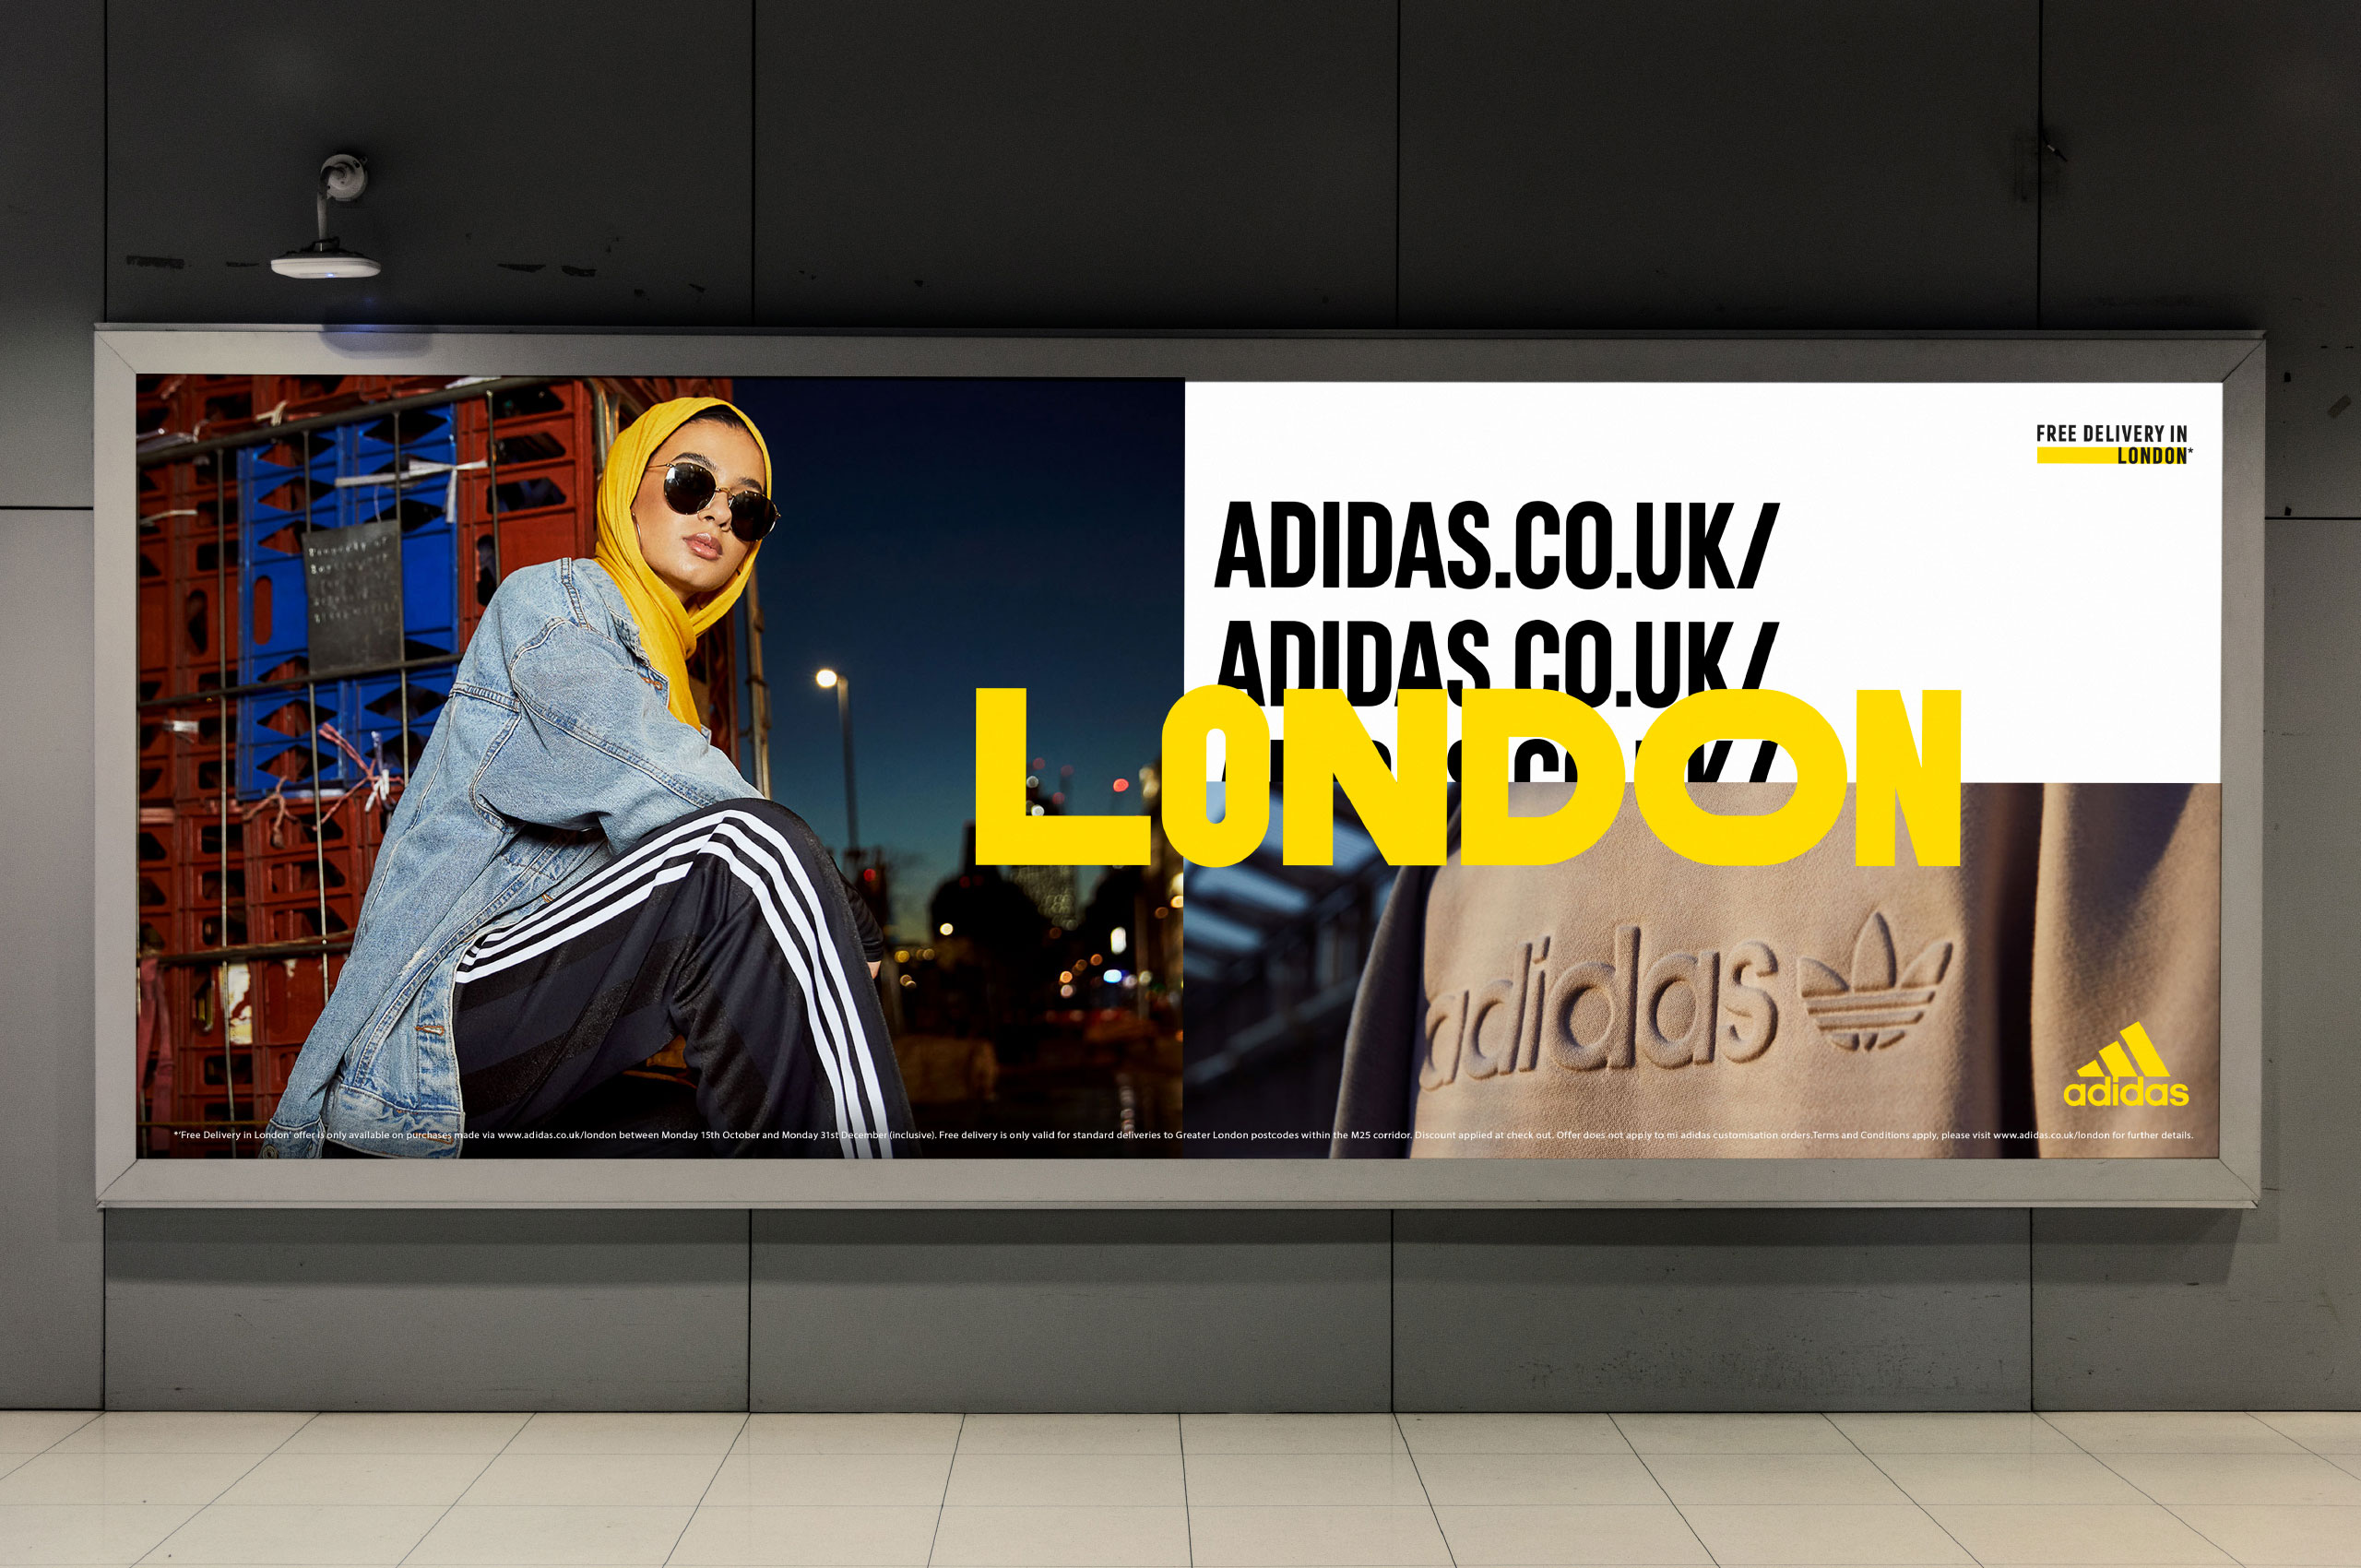 Adidas-website-image-04